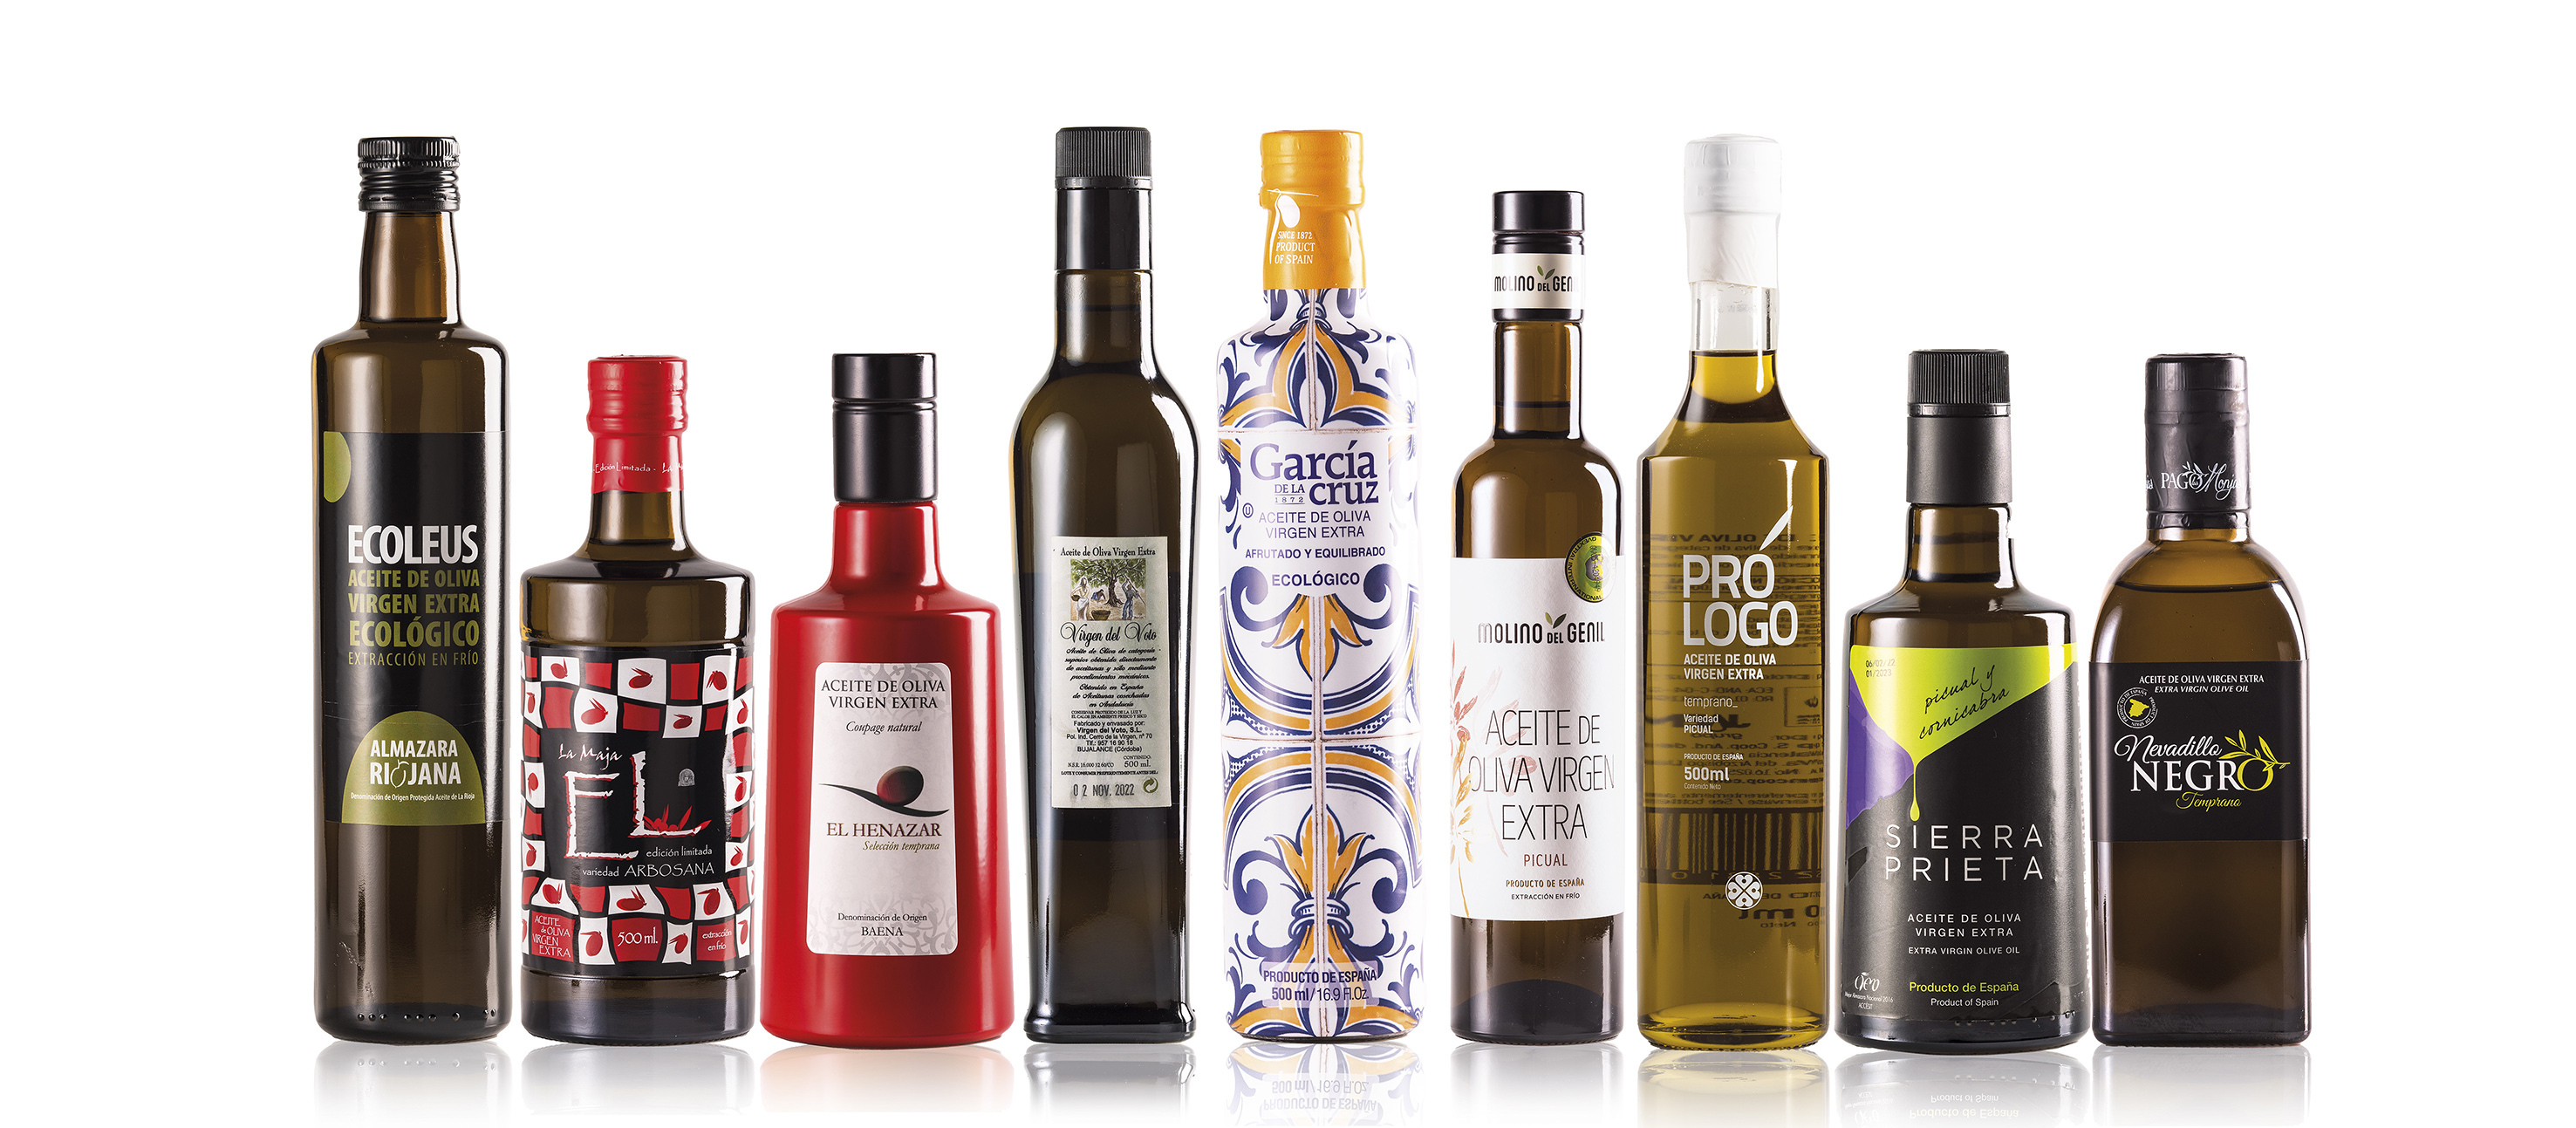 Estos son los mejores aceites de oliva virgen españoles por menos de 8 euros